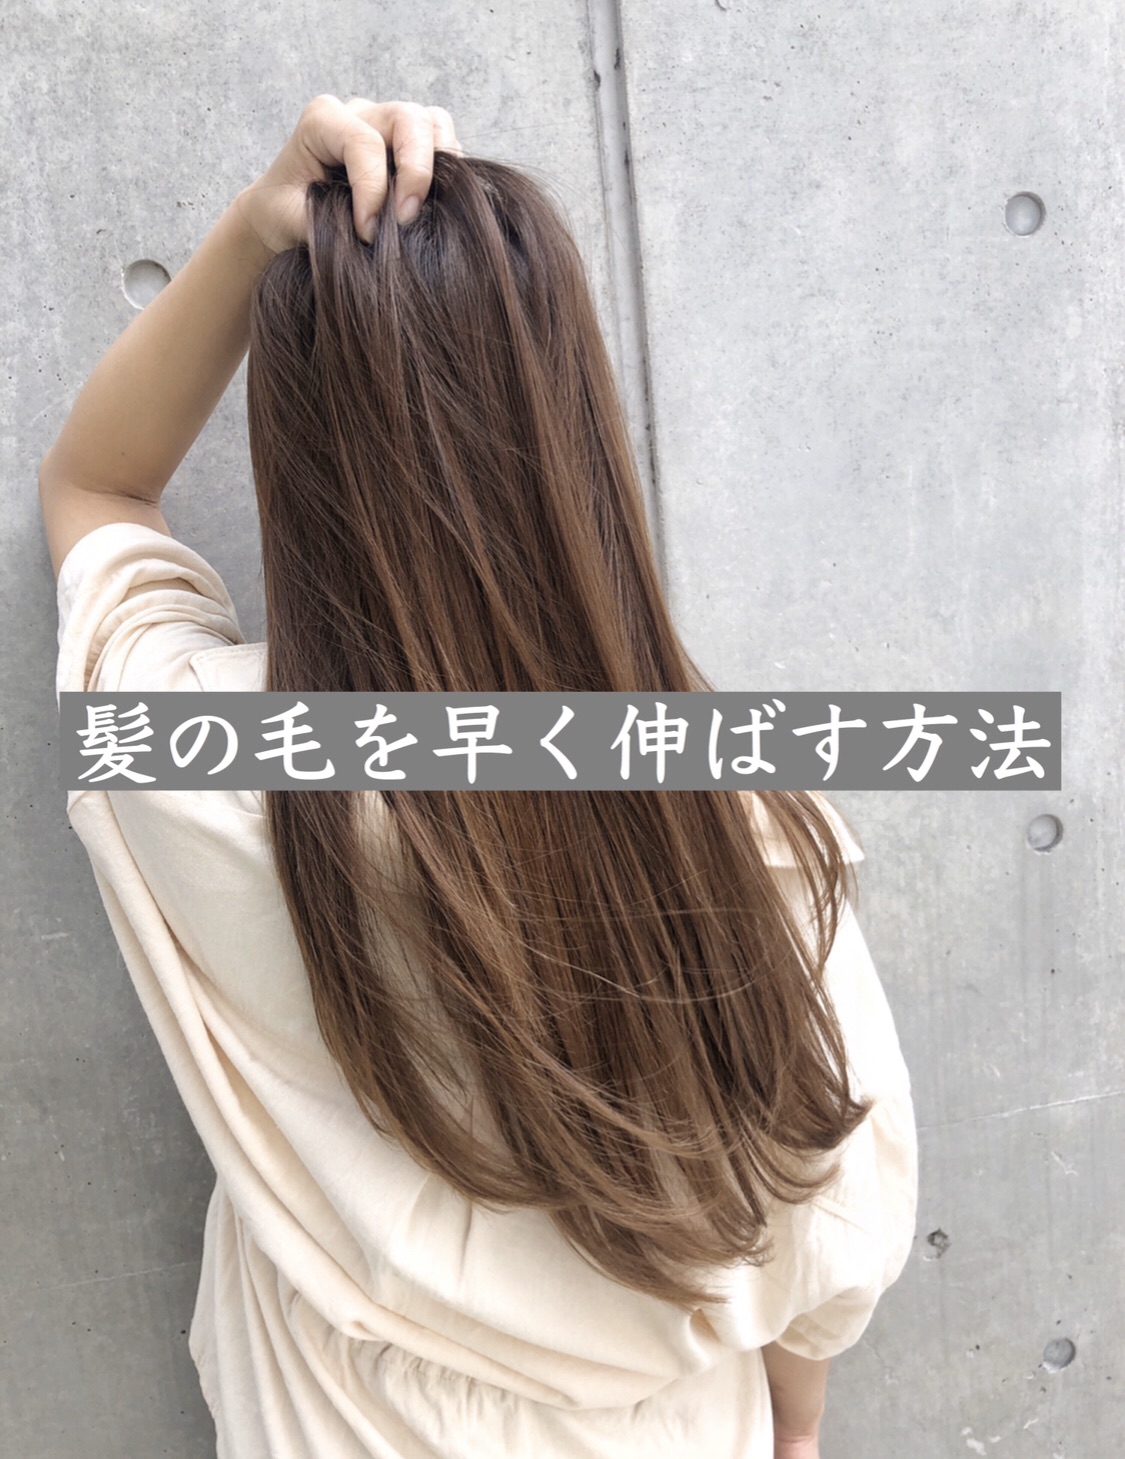 髪をキレイに早くで伸ばす サプリ 家での注意点 ダメージ トリートメント Nyny梅田茶屋町店ブログ